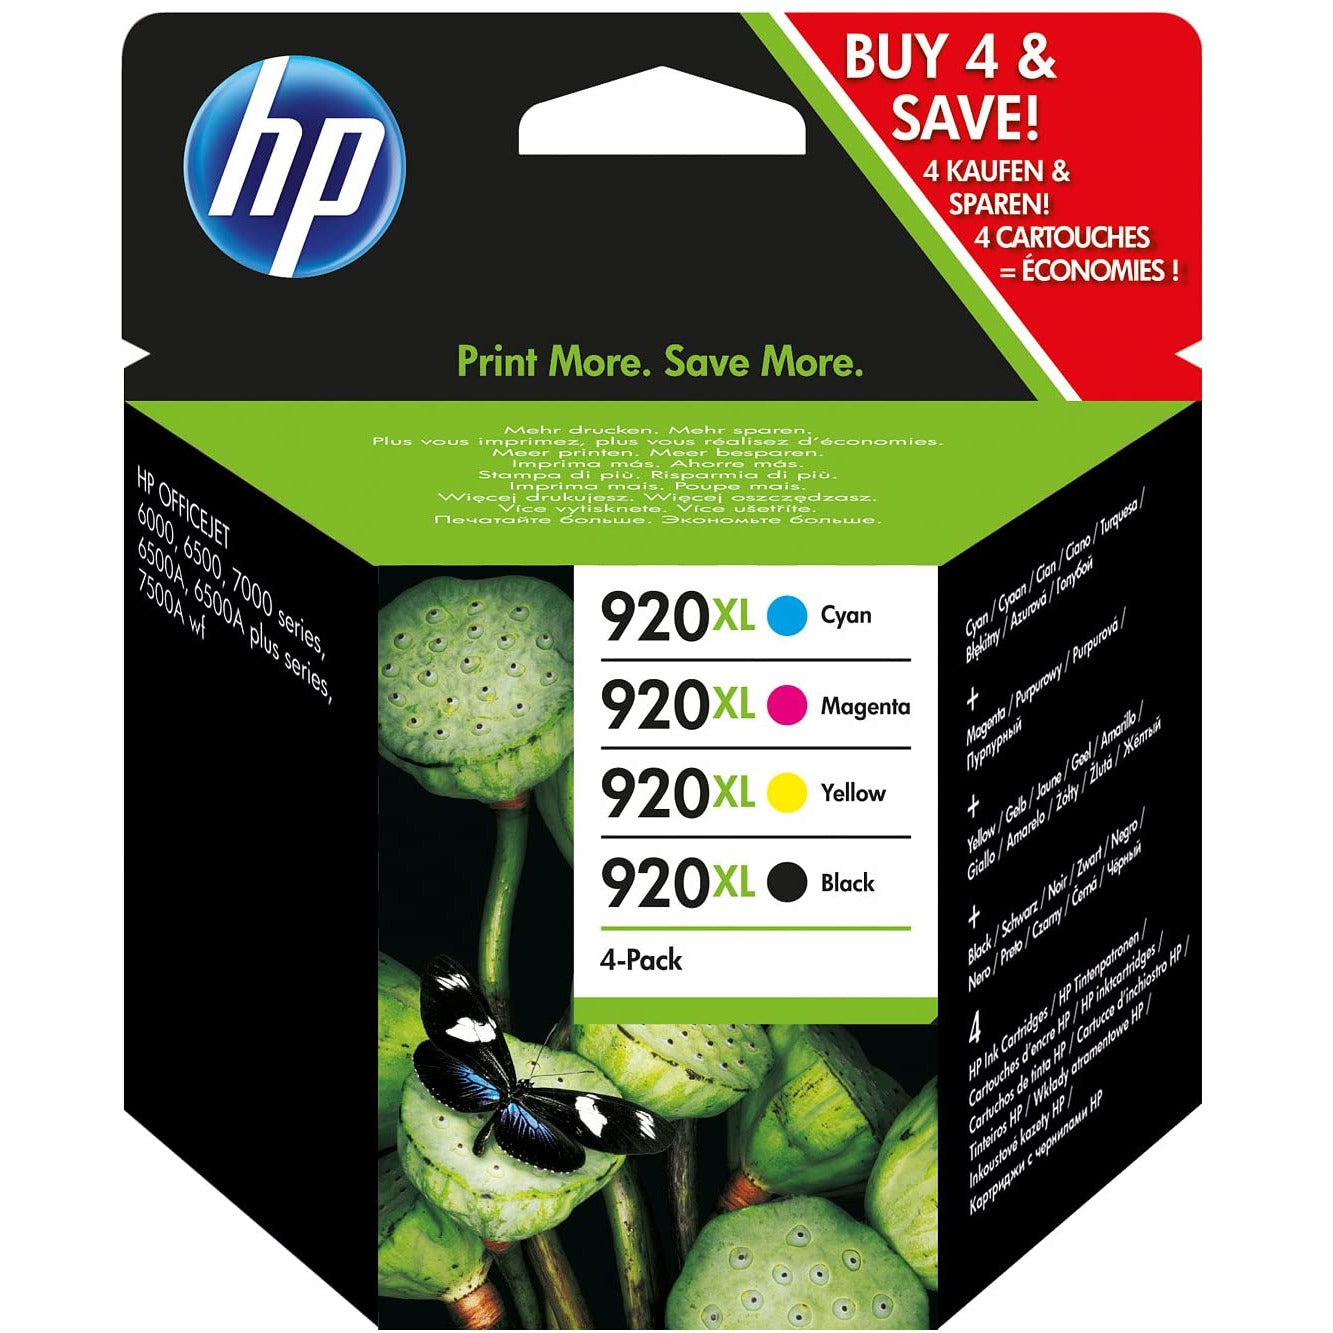 HP 920 XL Ink Cartridge